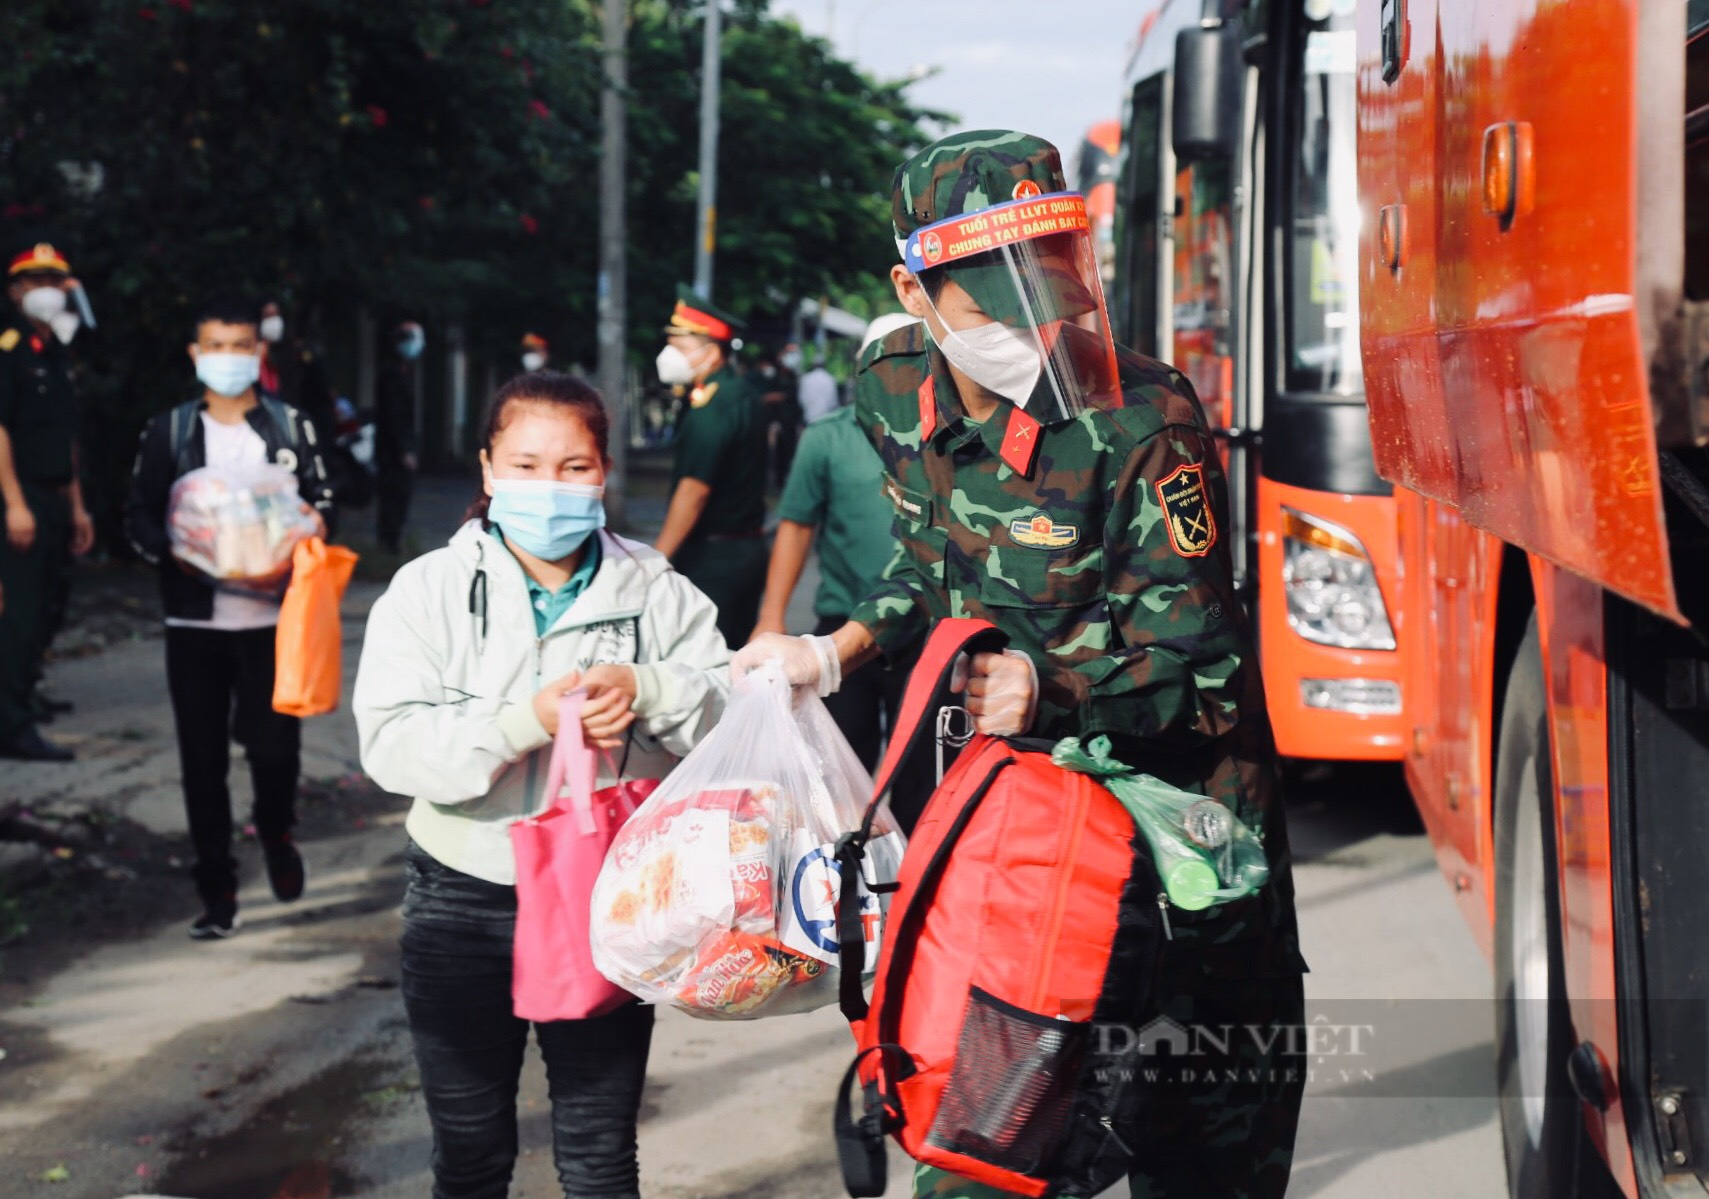 Ảnh: Bộ đội hỗ trợ đoàn gần trăm người đi bộ từ Long An về các tỉnh thuộc Tây Nguyên - Ảnh 3.